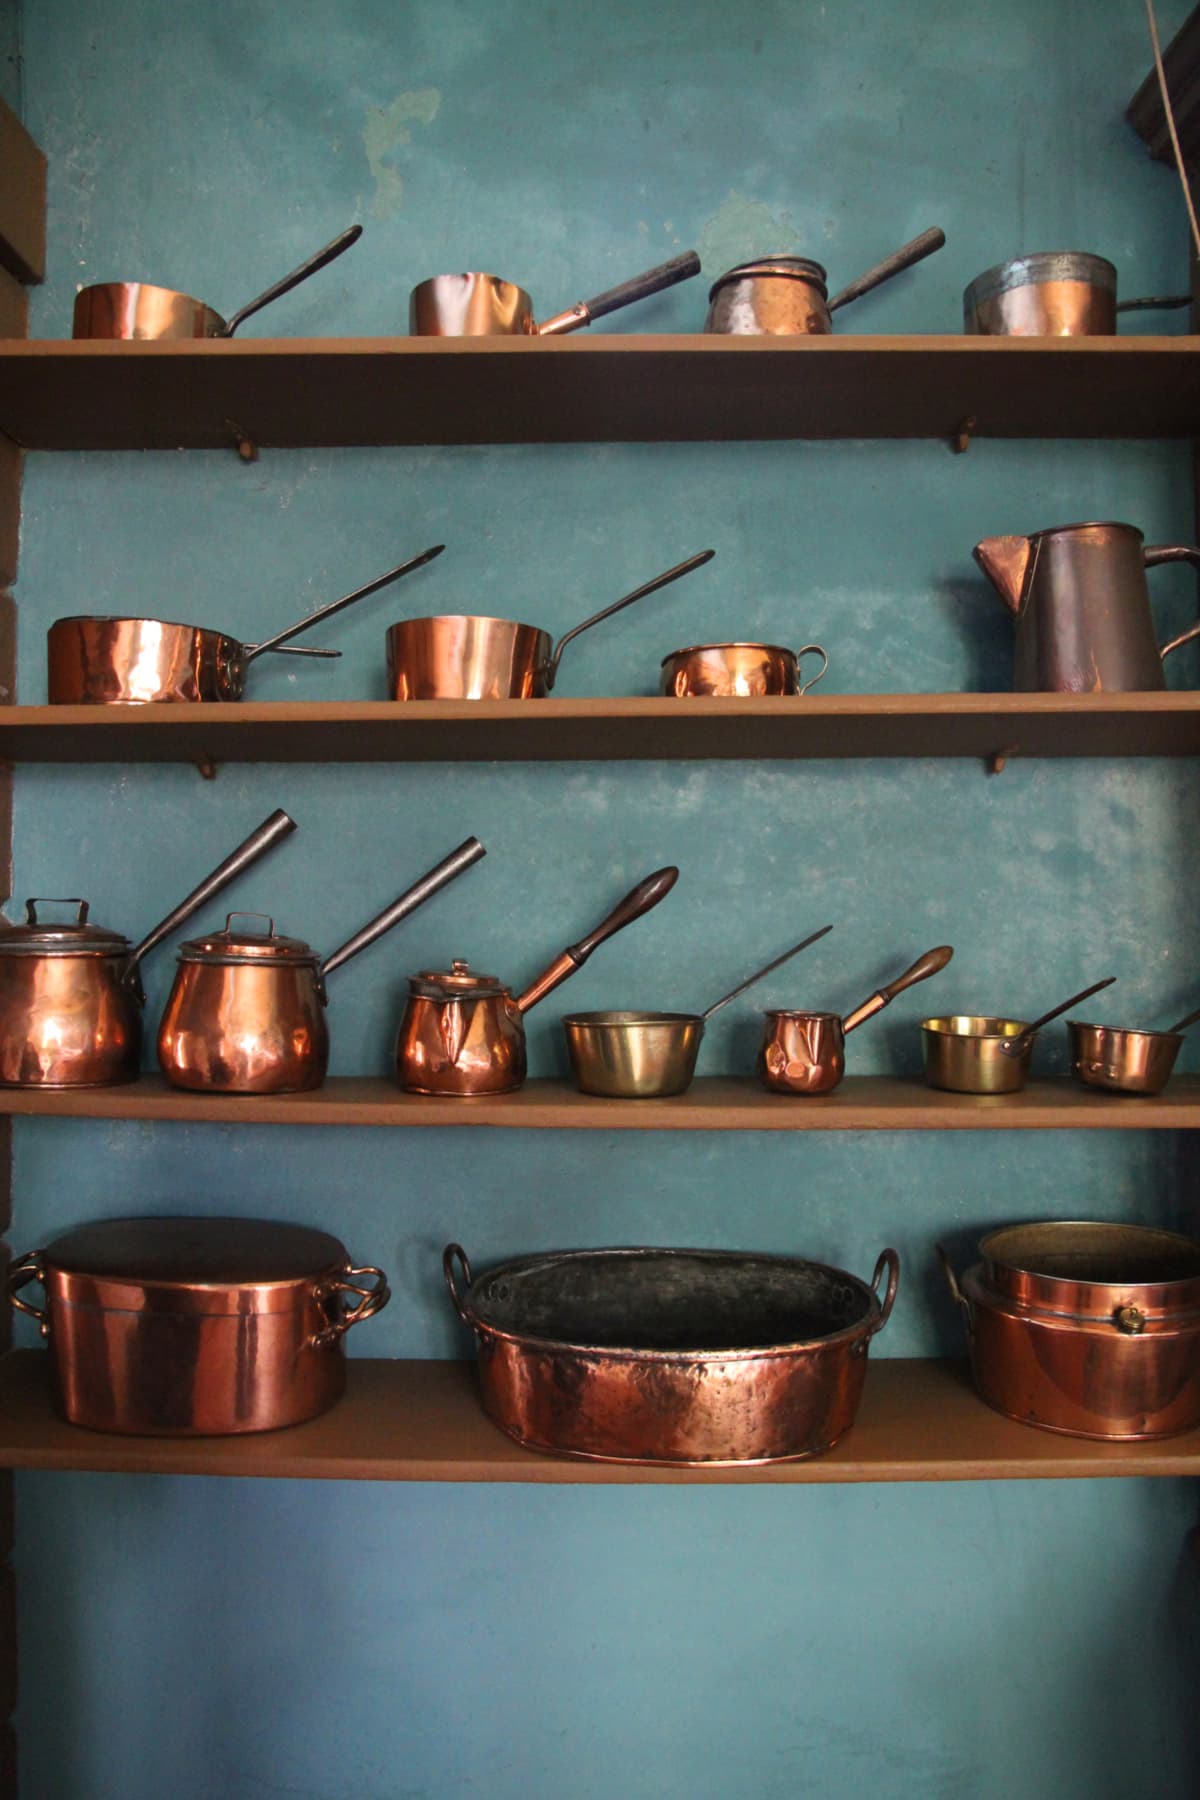 Old copper pots on shelves